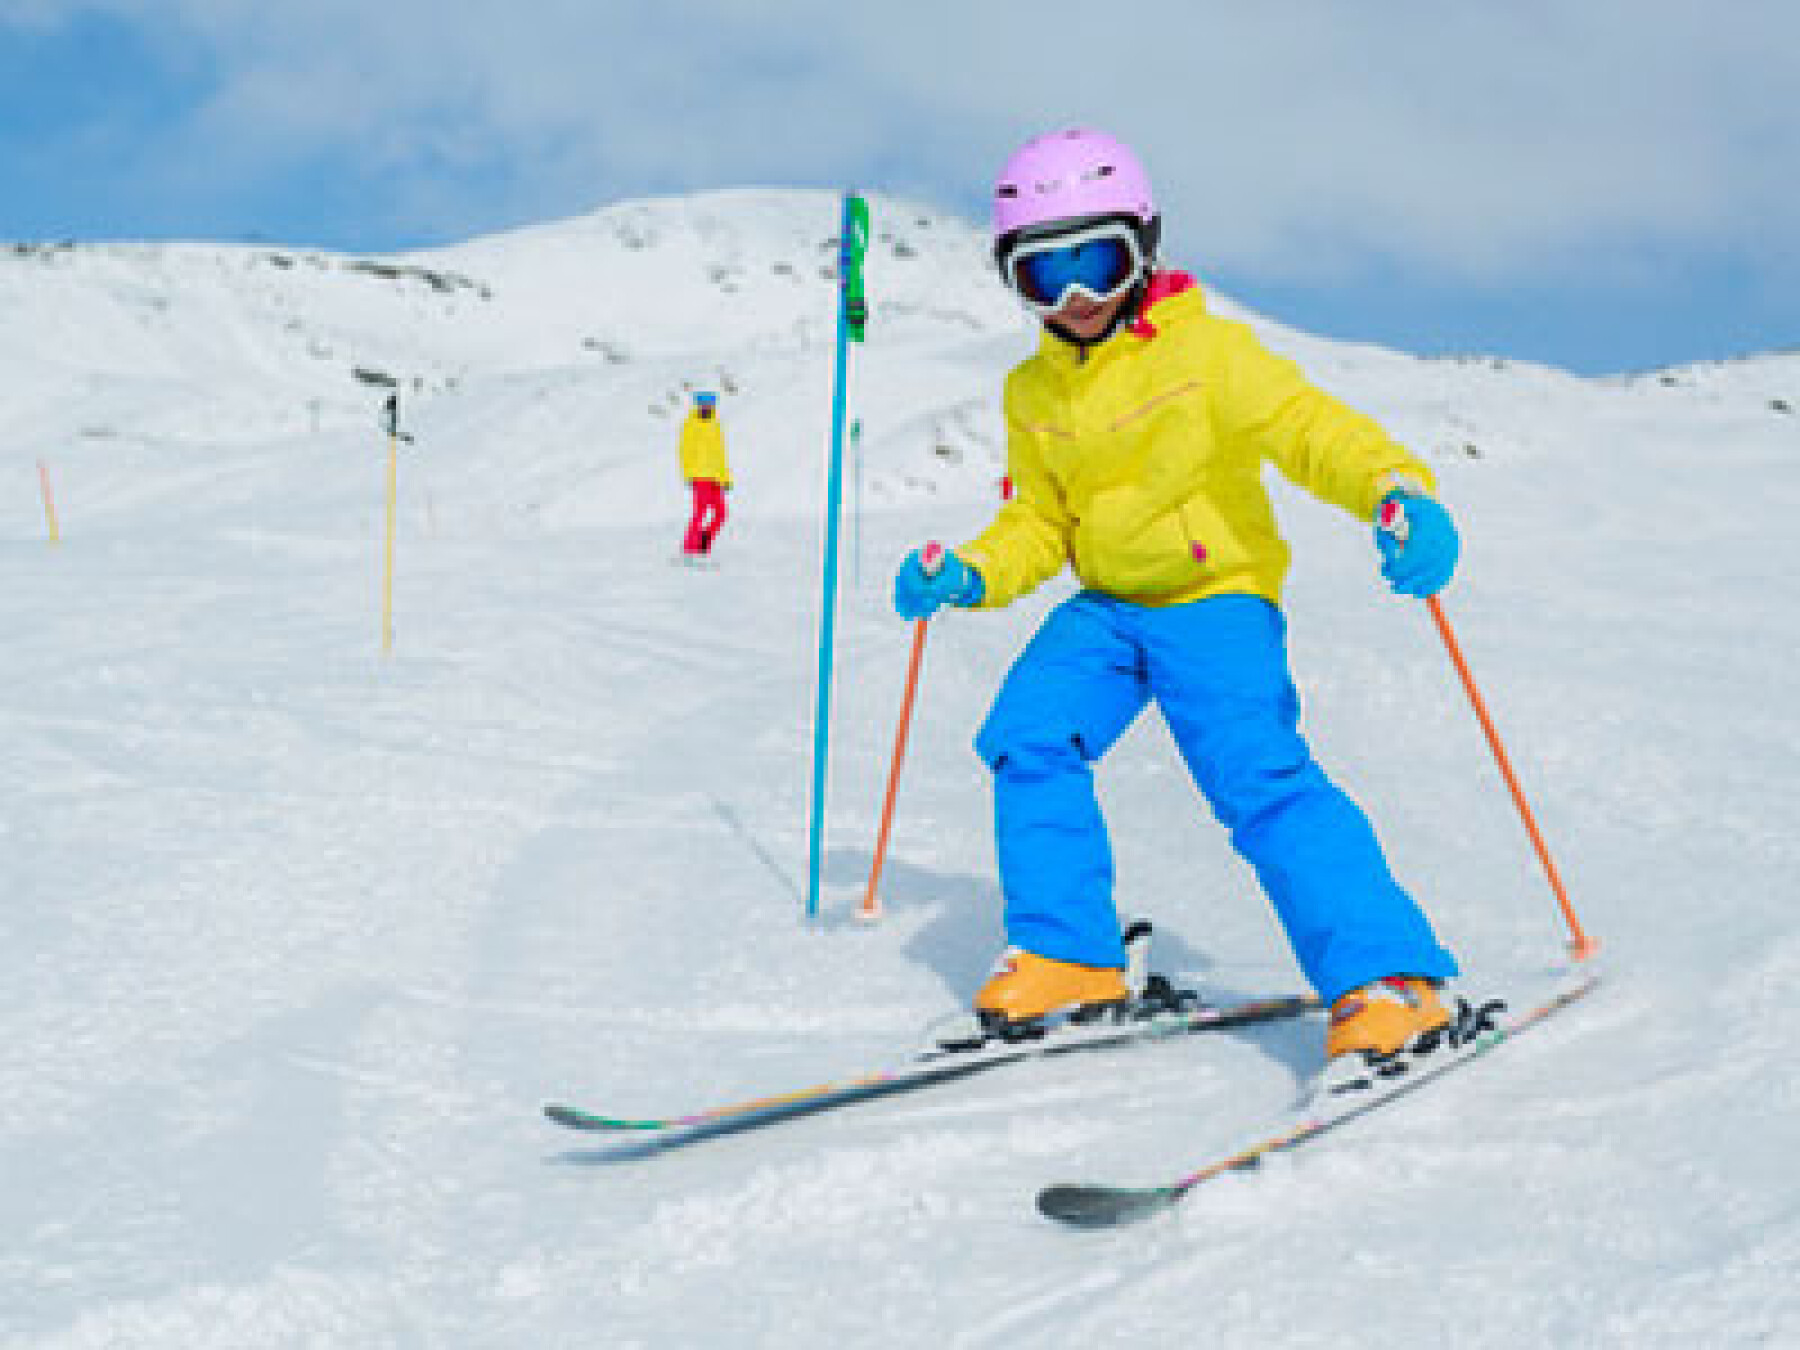 Vacances au ski : prudence sur les pistes !